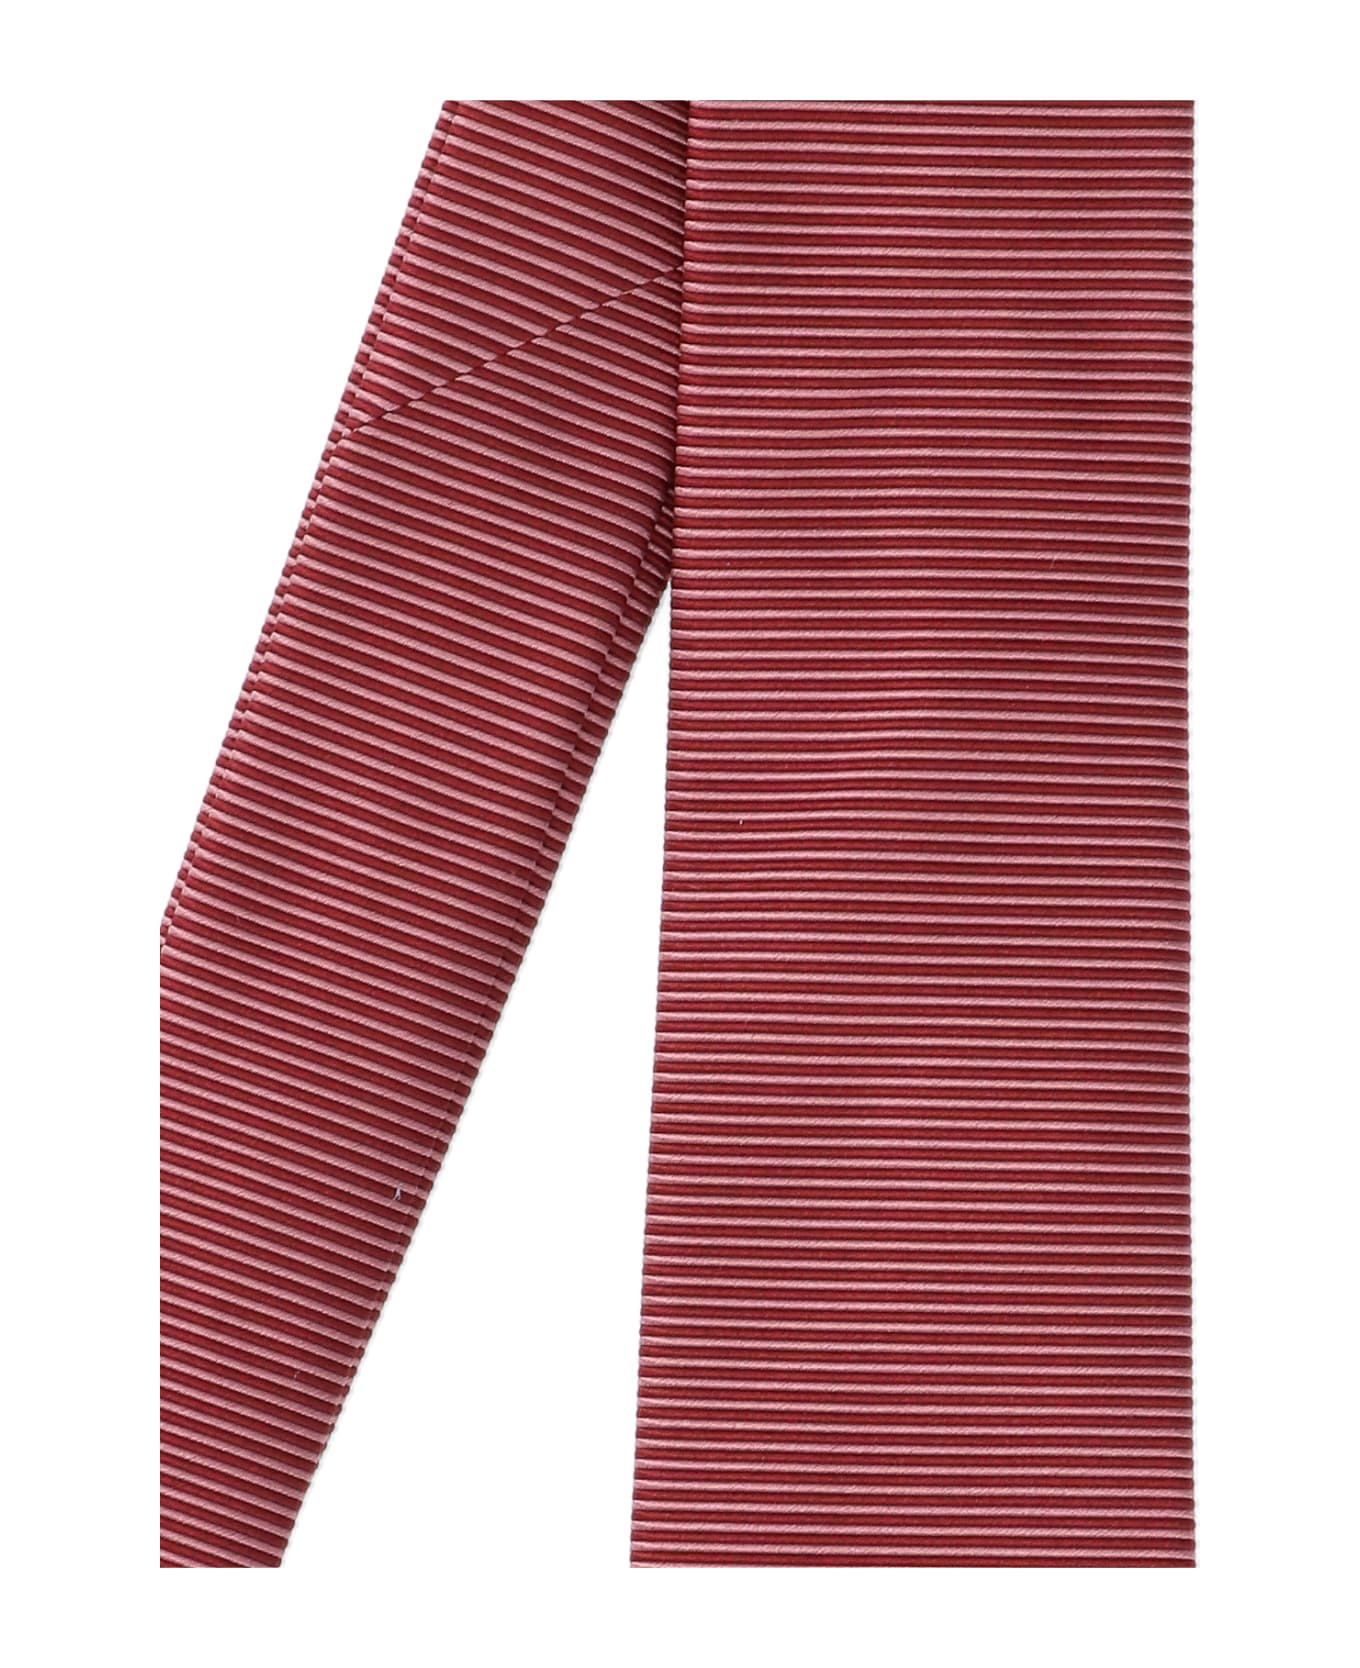 Ferragamo Striped Tie - Red